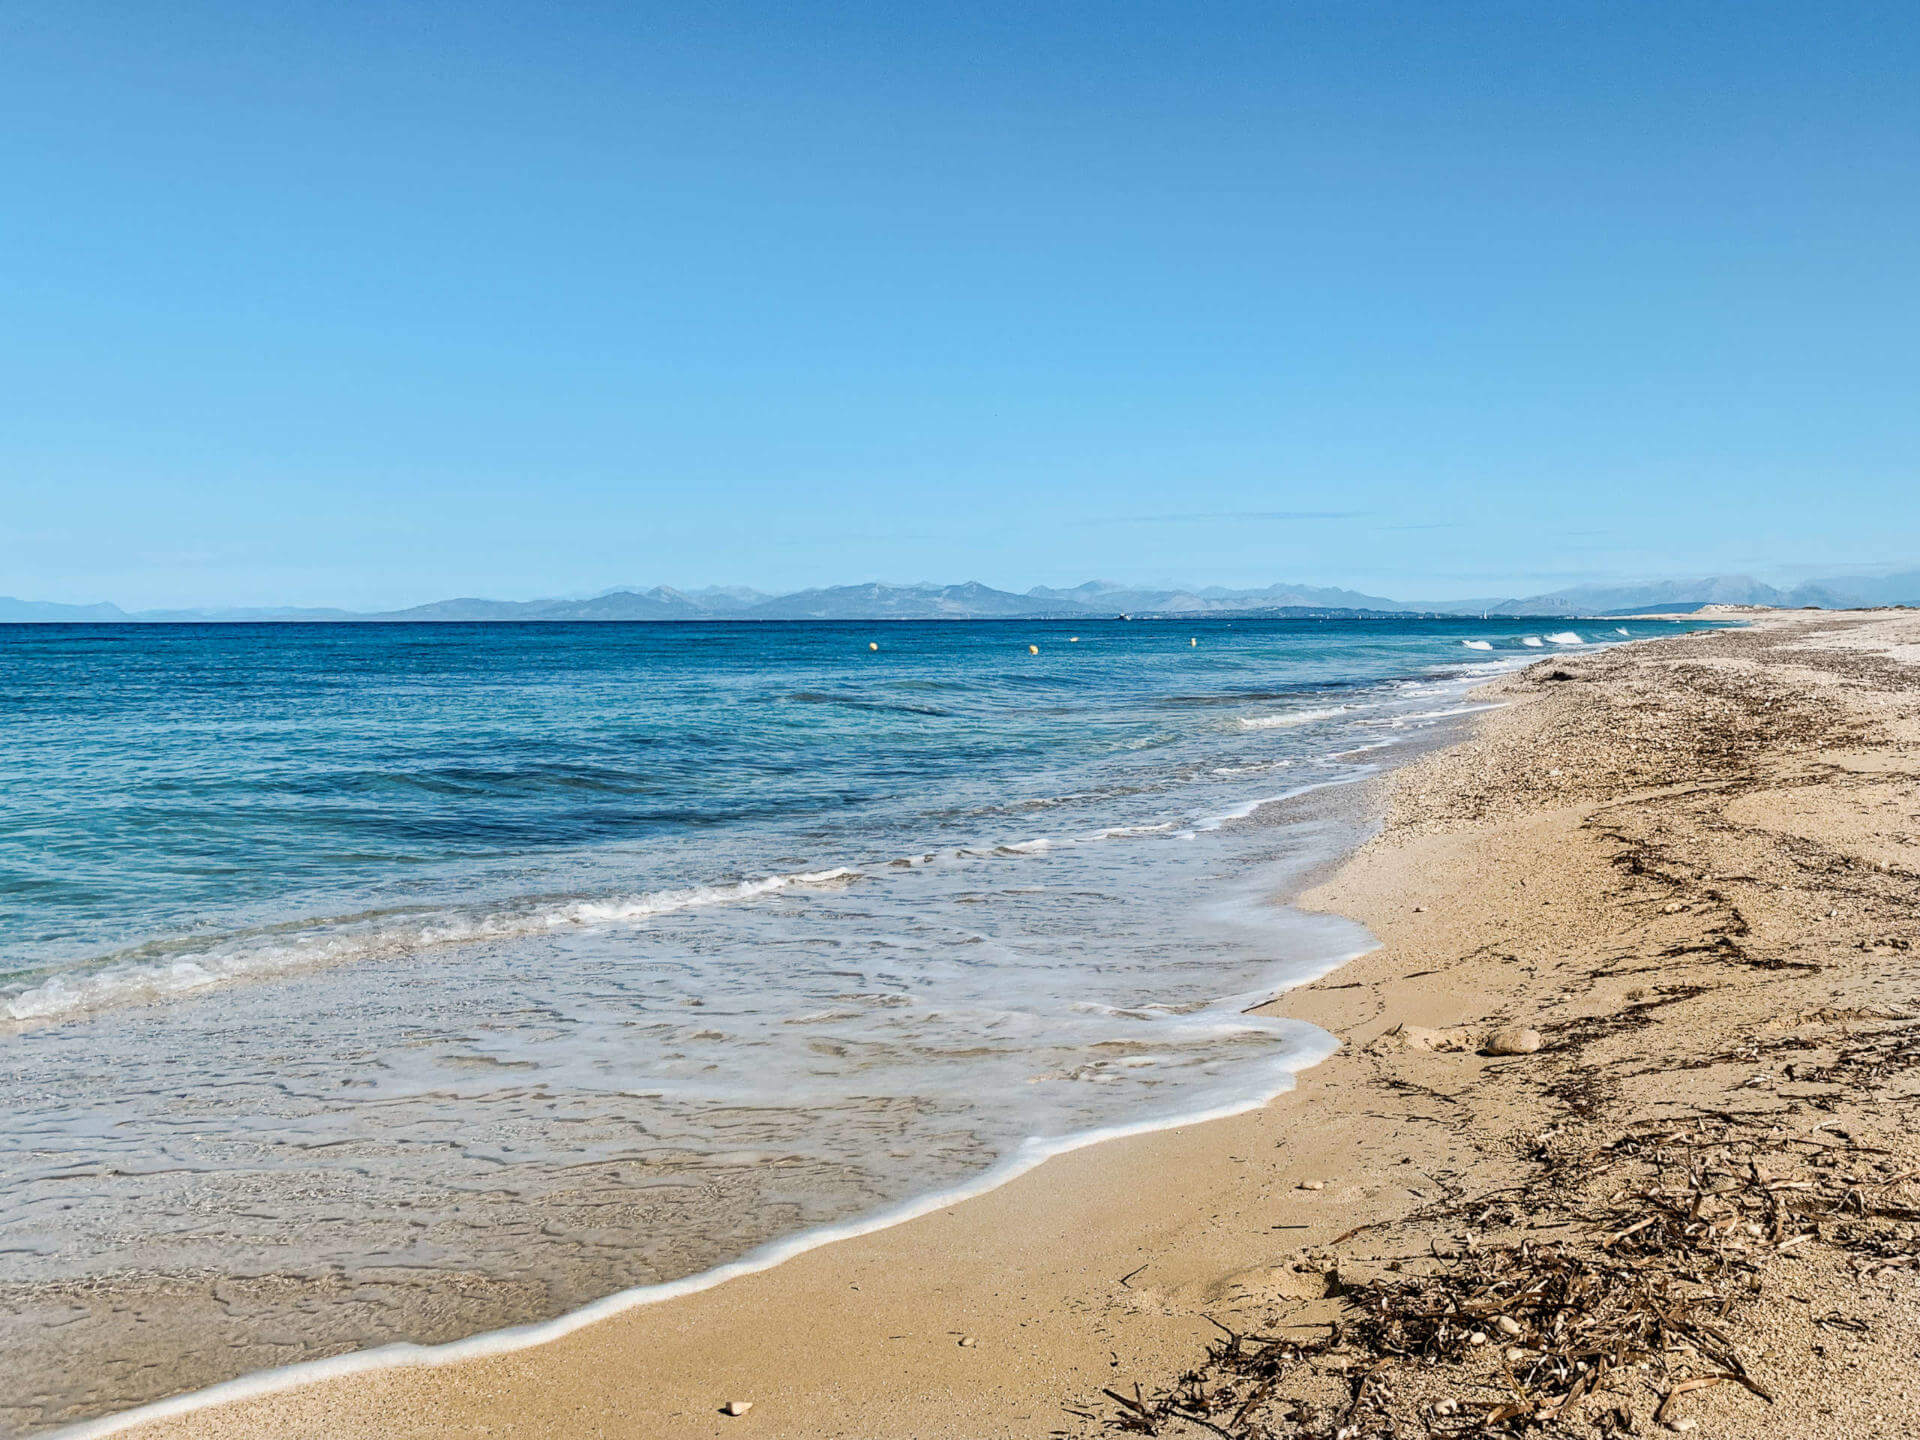 Sanfte Wellen spült das Meer an den feinen Sandstrand in der Nähe von Griechenlands Hauptstadt Athen.